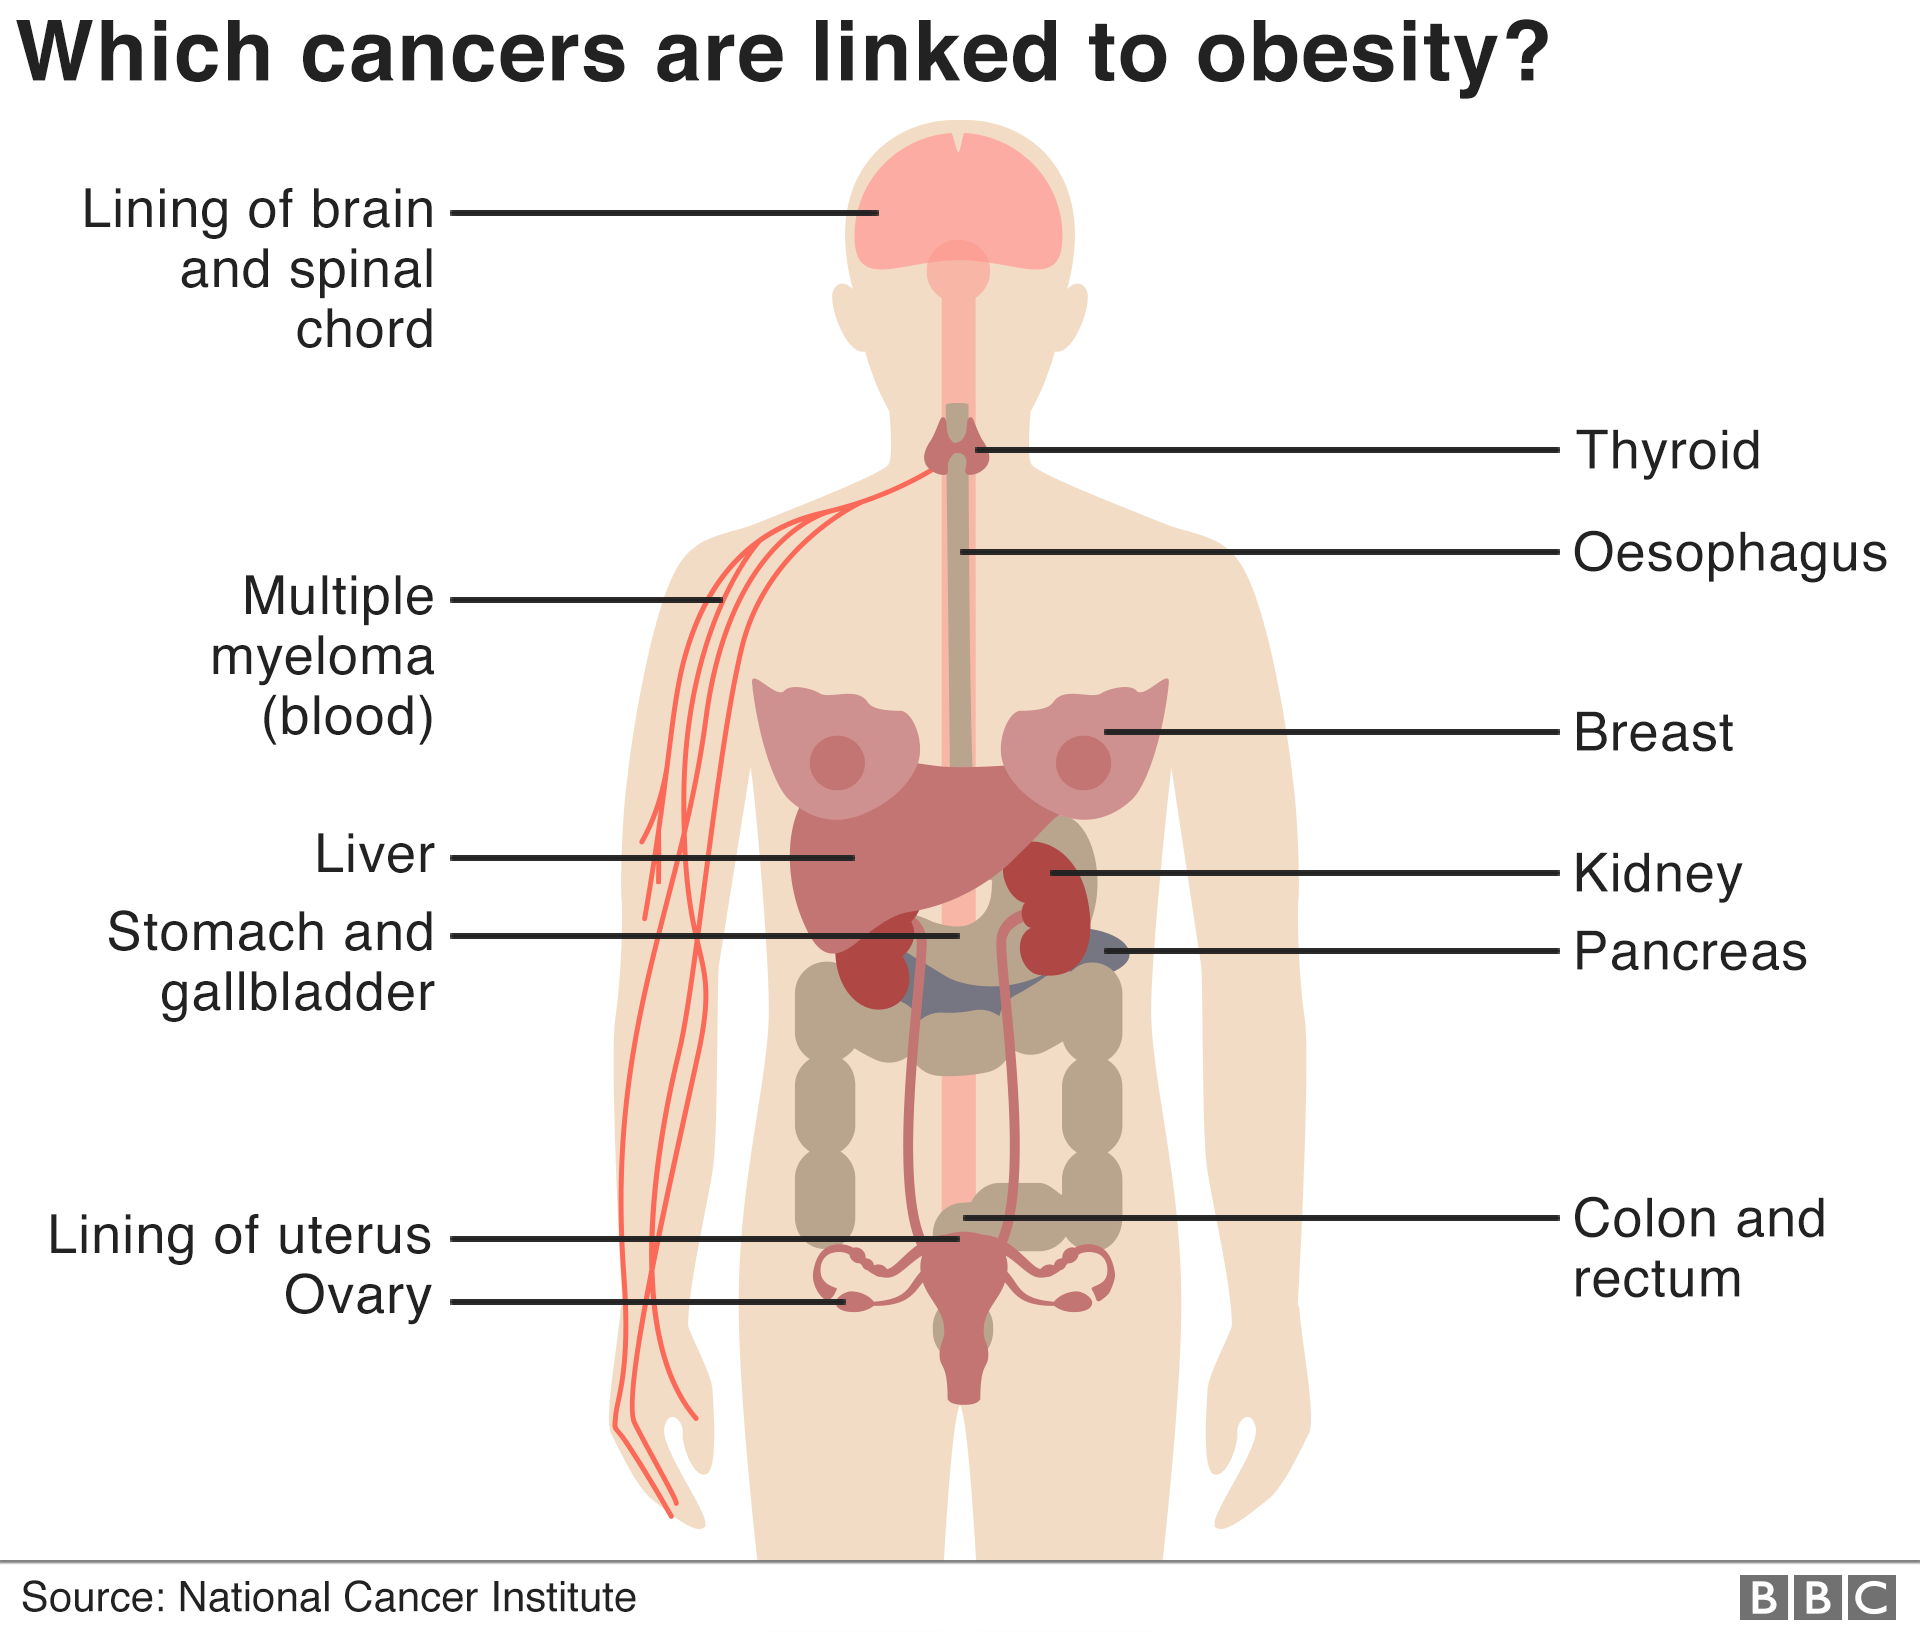 Инфографика показывает женское человеческое тело и указывает части тела, где ожирение связано с раком